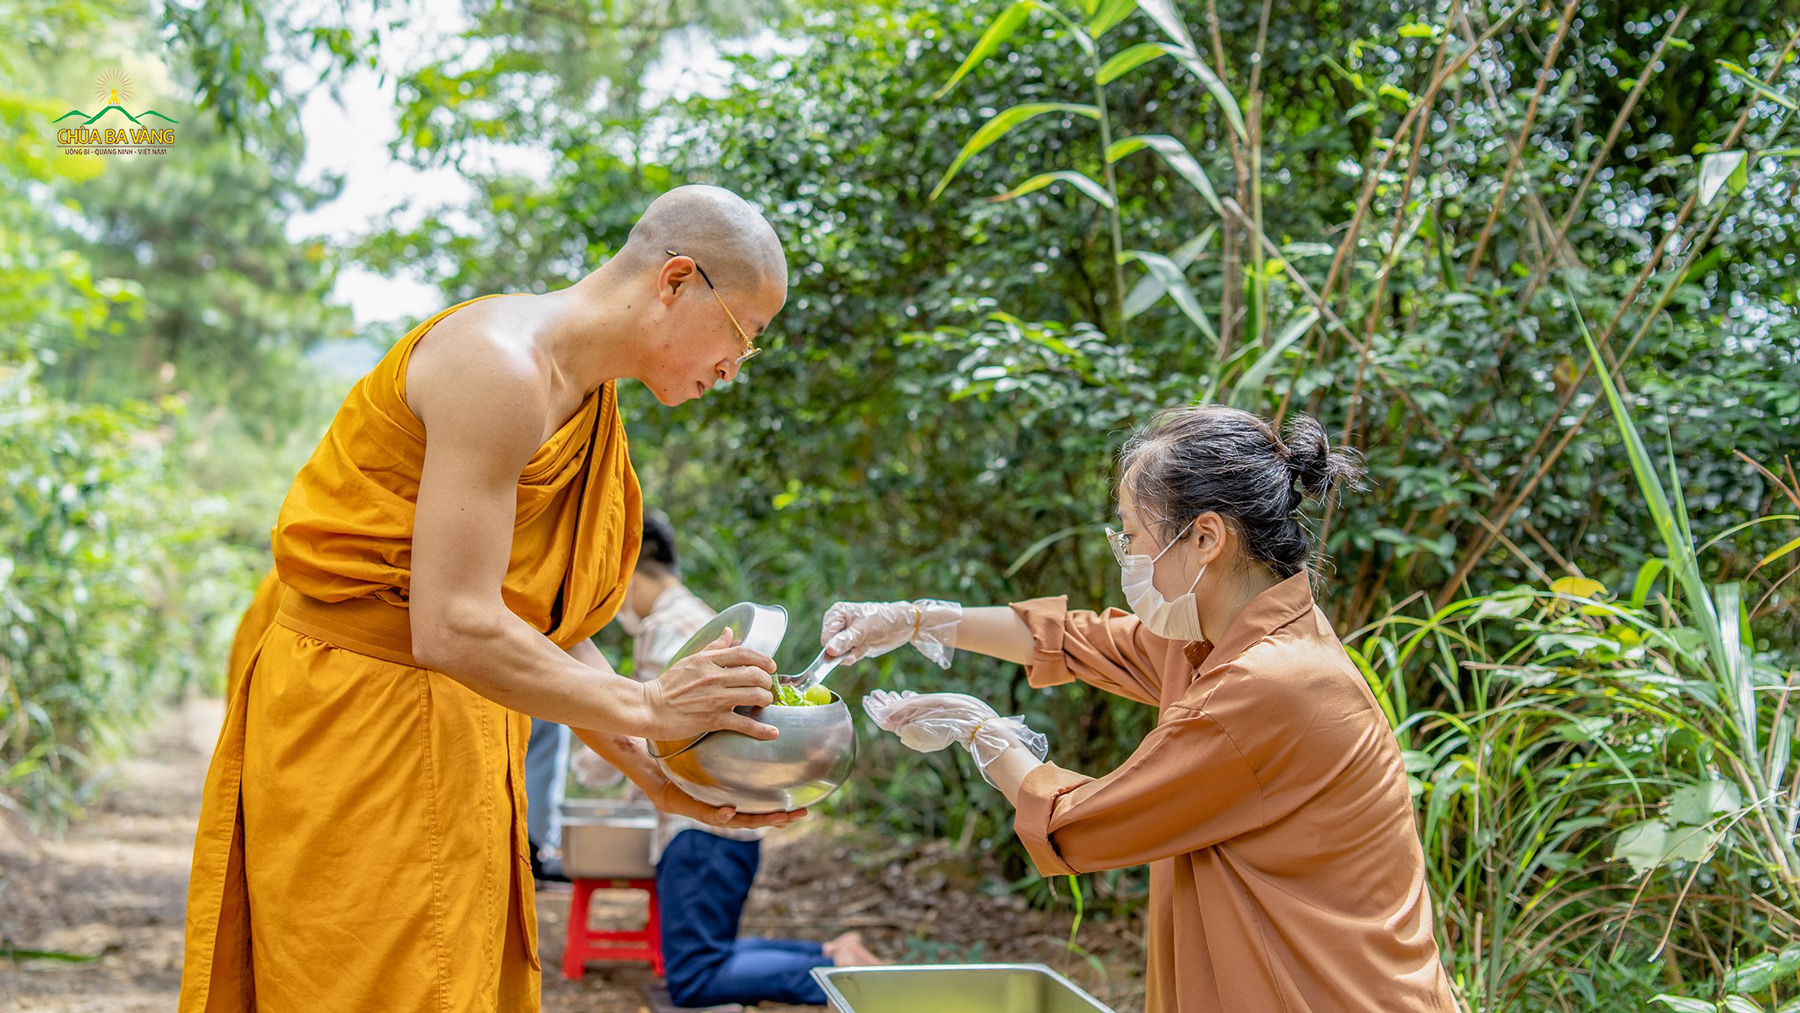 Hiểu được lợi ích khi sớt bát cúng dường Tăng chúng tu hành thanh tịnh, các Phật tử đã chuẩn bị những vật thực để dâng lên cúng dường